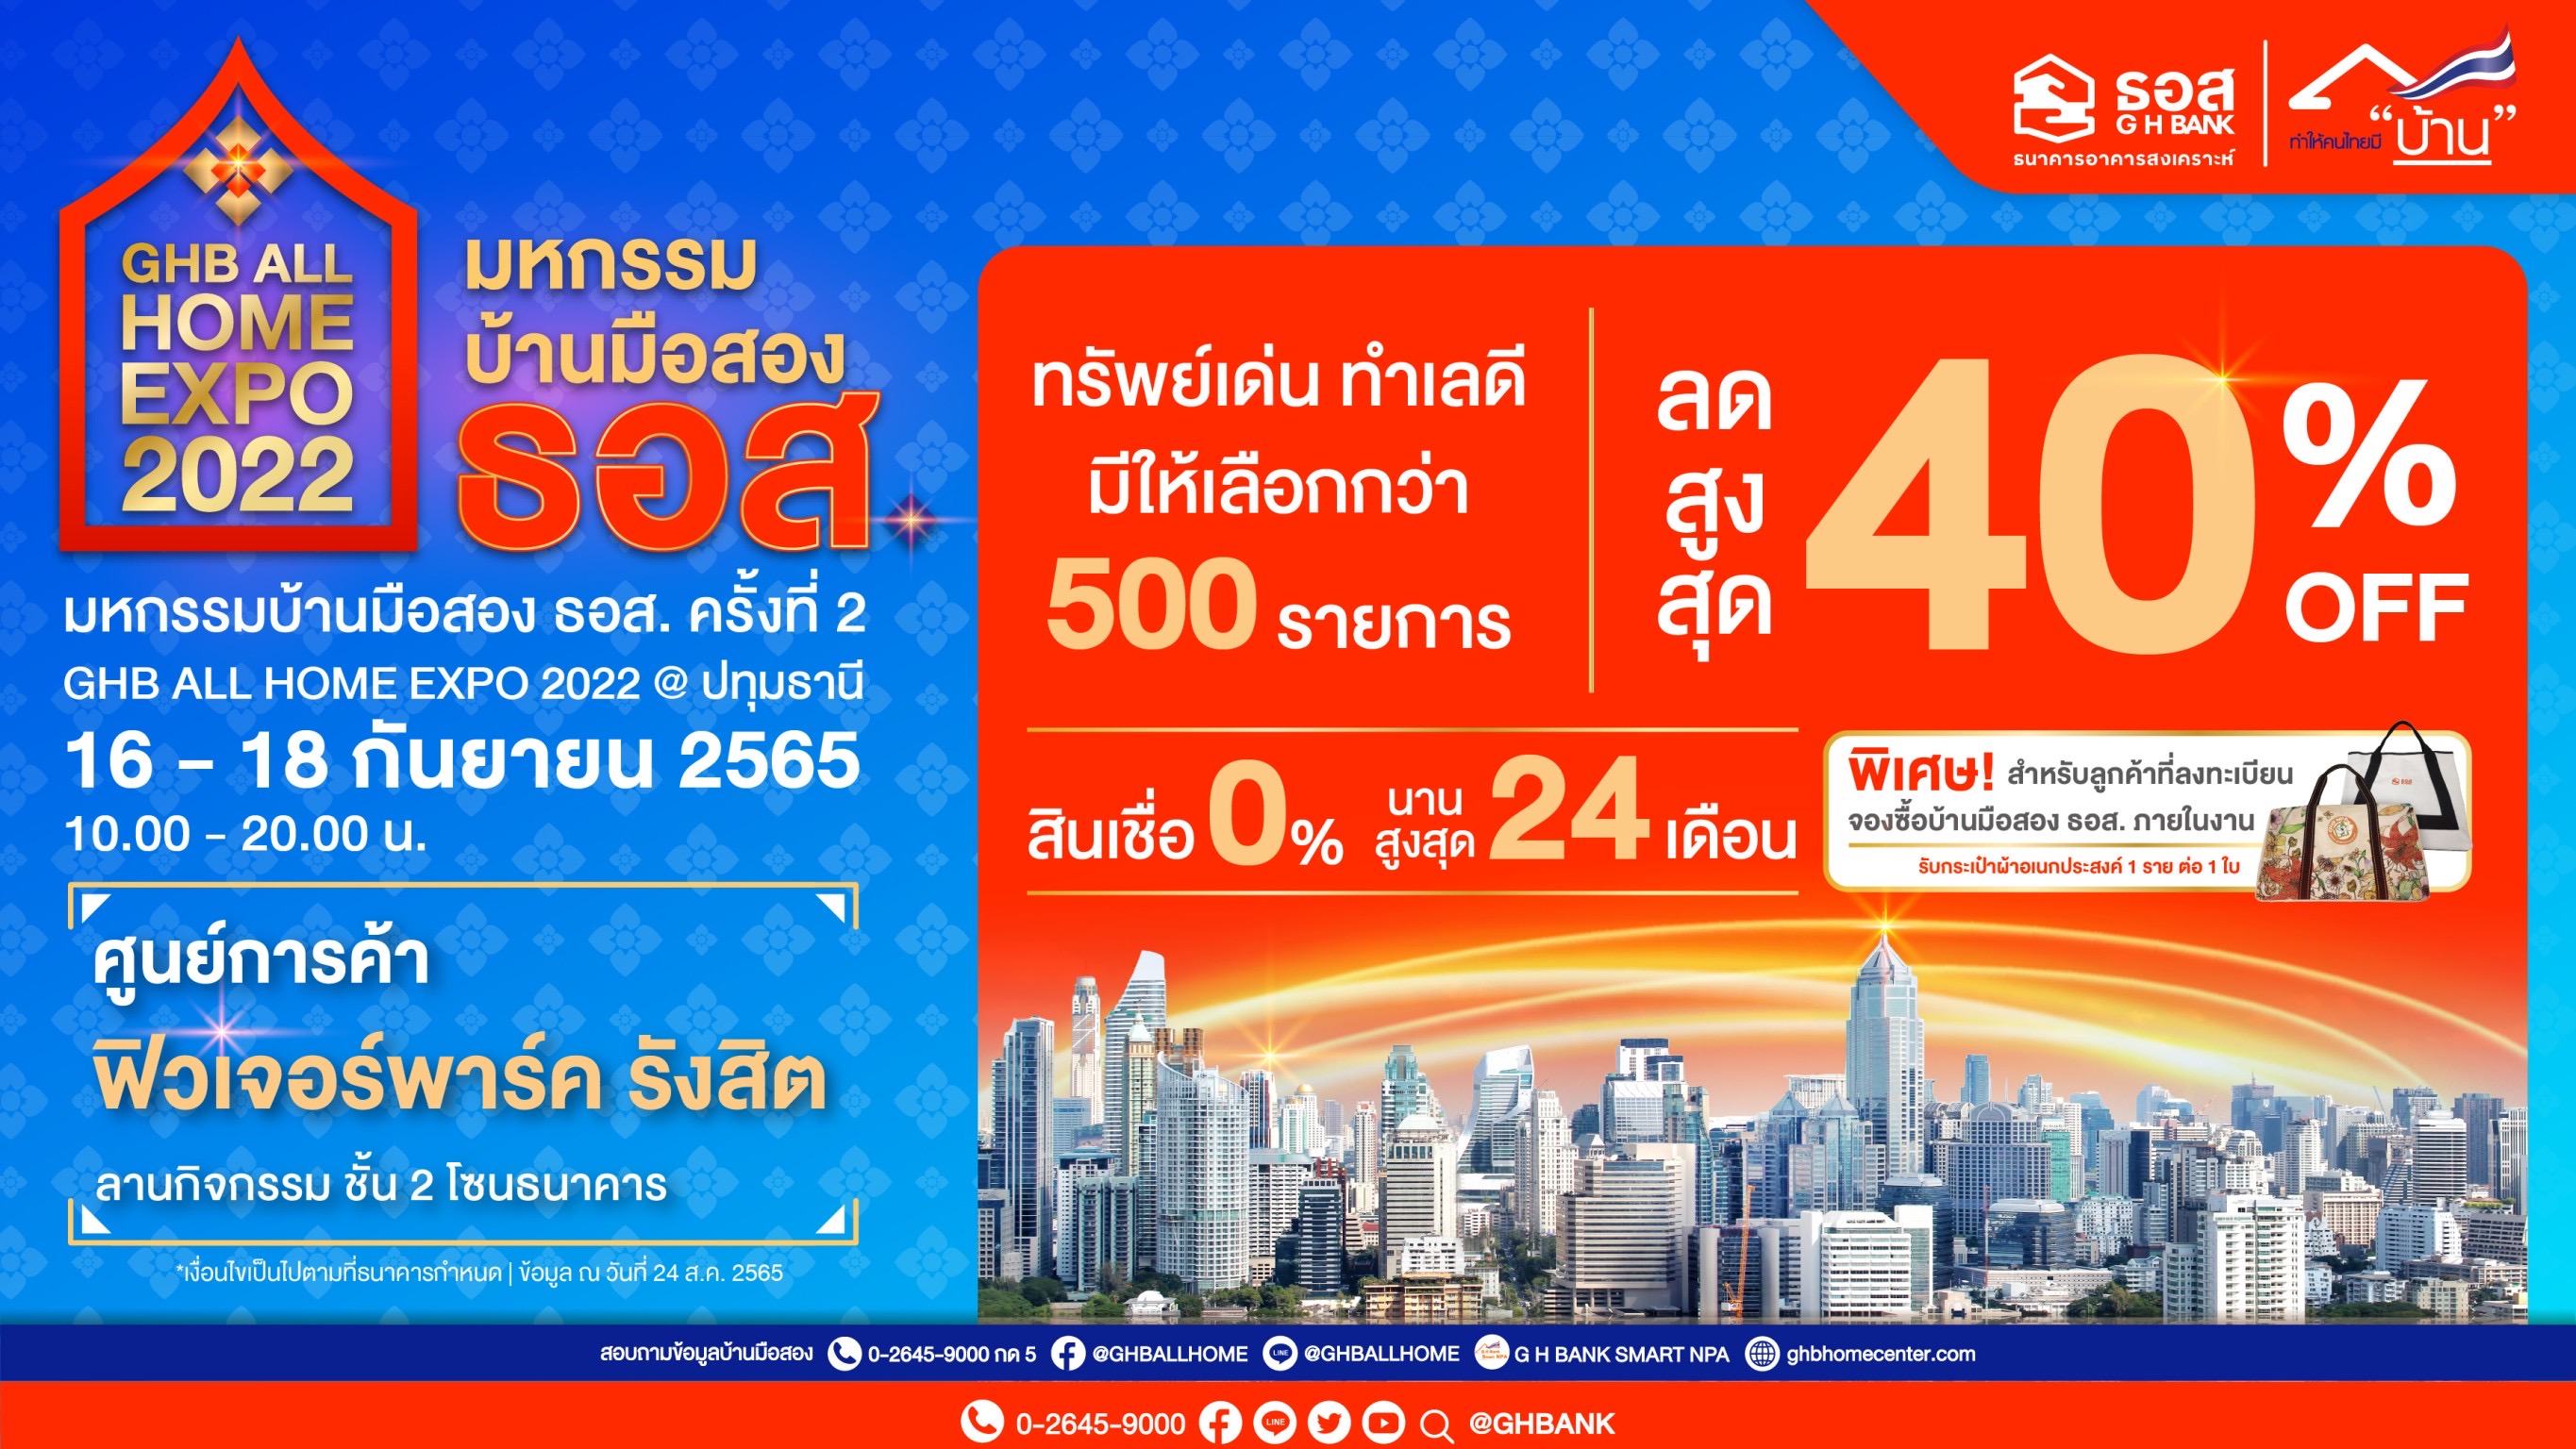 ธอส. จัดงาน GHB ALL HOME EXPO 2022 @ปทุมธานี บ้านมือสอง ลดสูงสุด 40% ราคาขายต่ำสุดเพียง 85,000 บาท